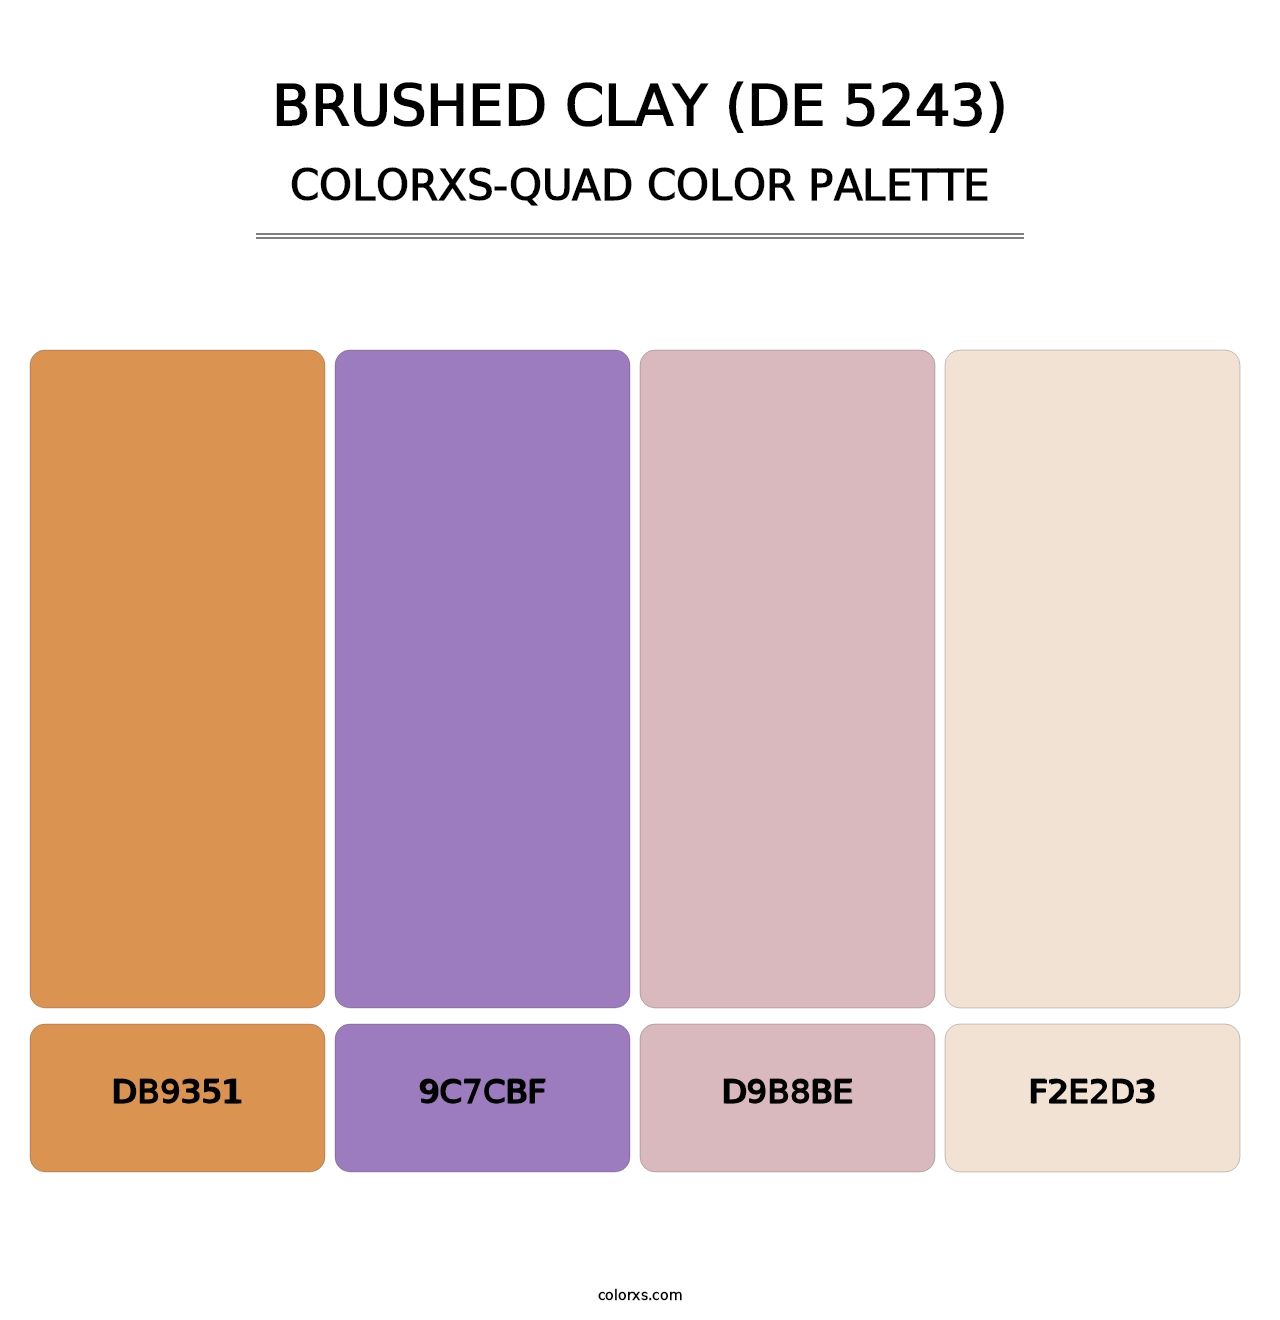 Brushed Clay (DE 5243) - Colorxs Quad Palette